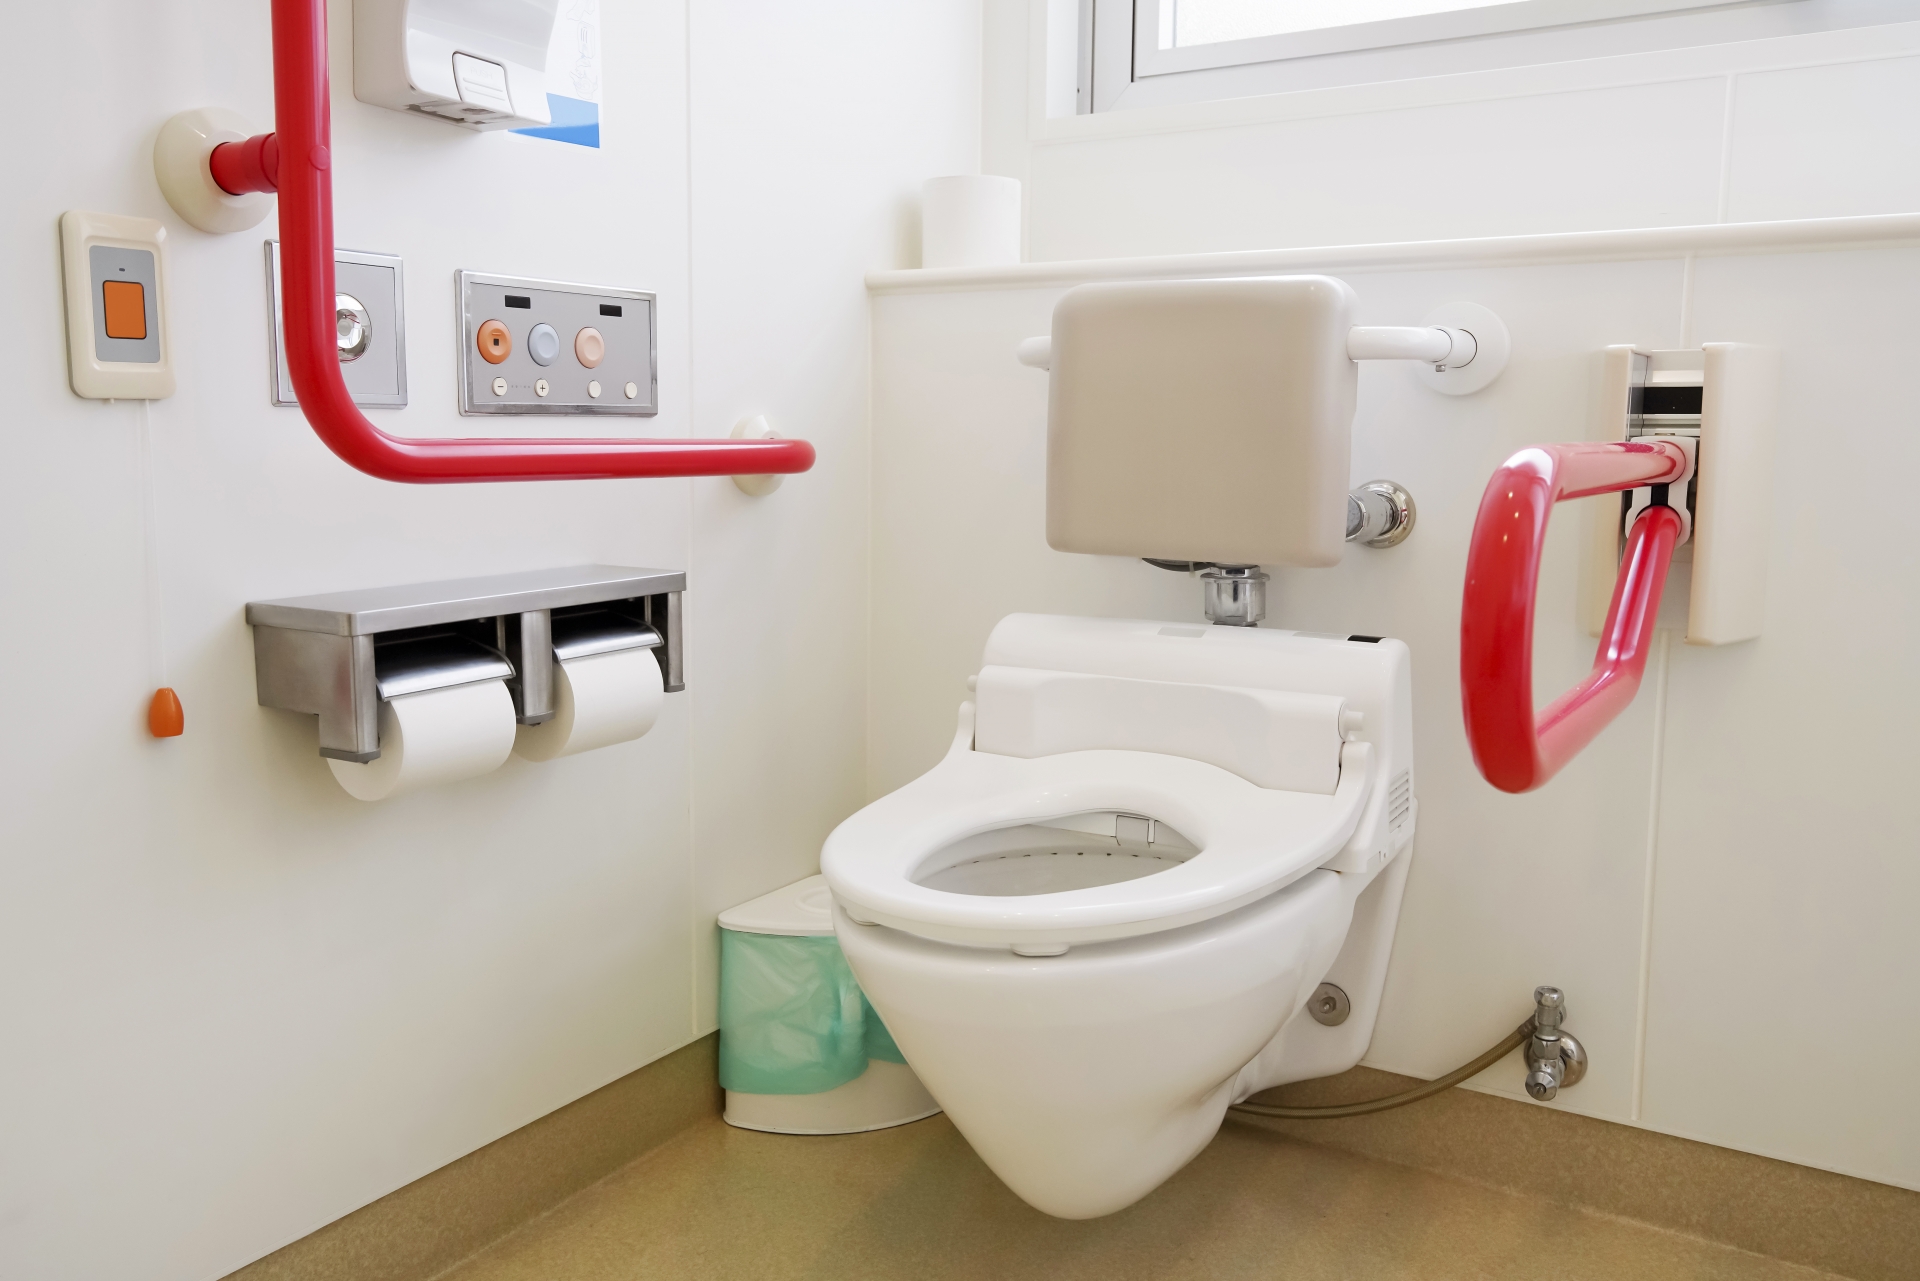 認知症患者のトイレの失敗を予防するには 介護のいろは 大阪の介護施設 老人ホームならカイフクナビ